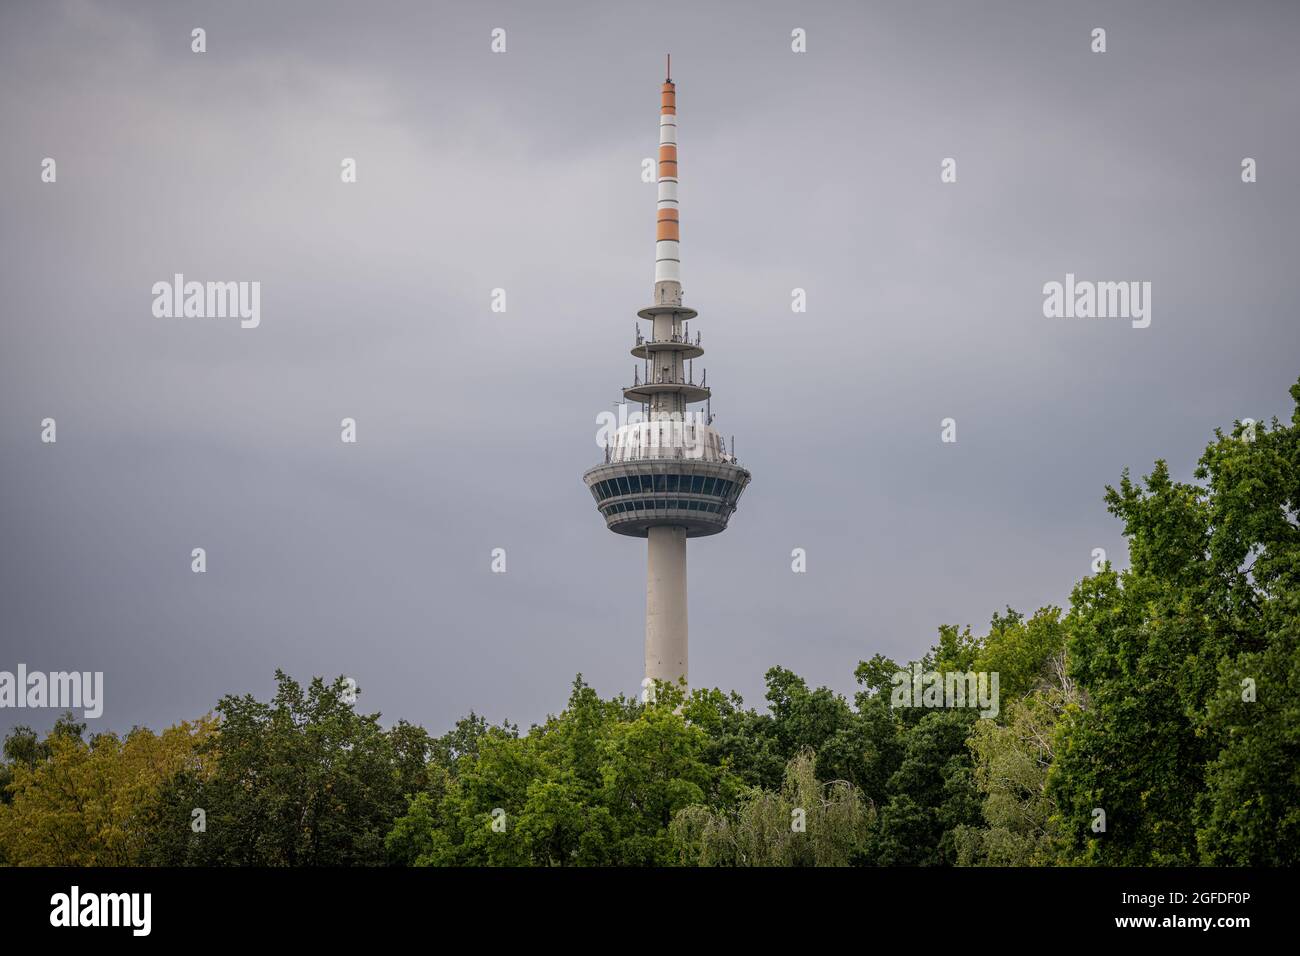 Symbole, Deutschland, Badenwürtemberg, Mannheim, Luisenpark, August 23. Der Fernmeldeturm / Fernsehturm in Mannheim. Stock Photo